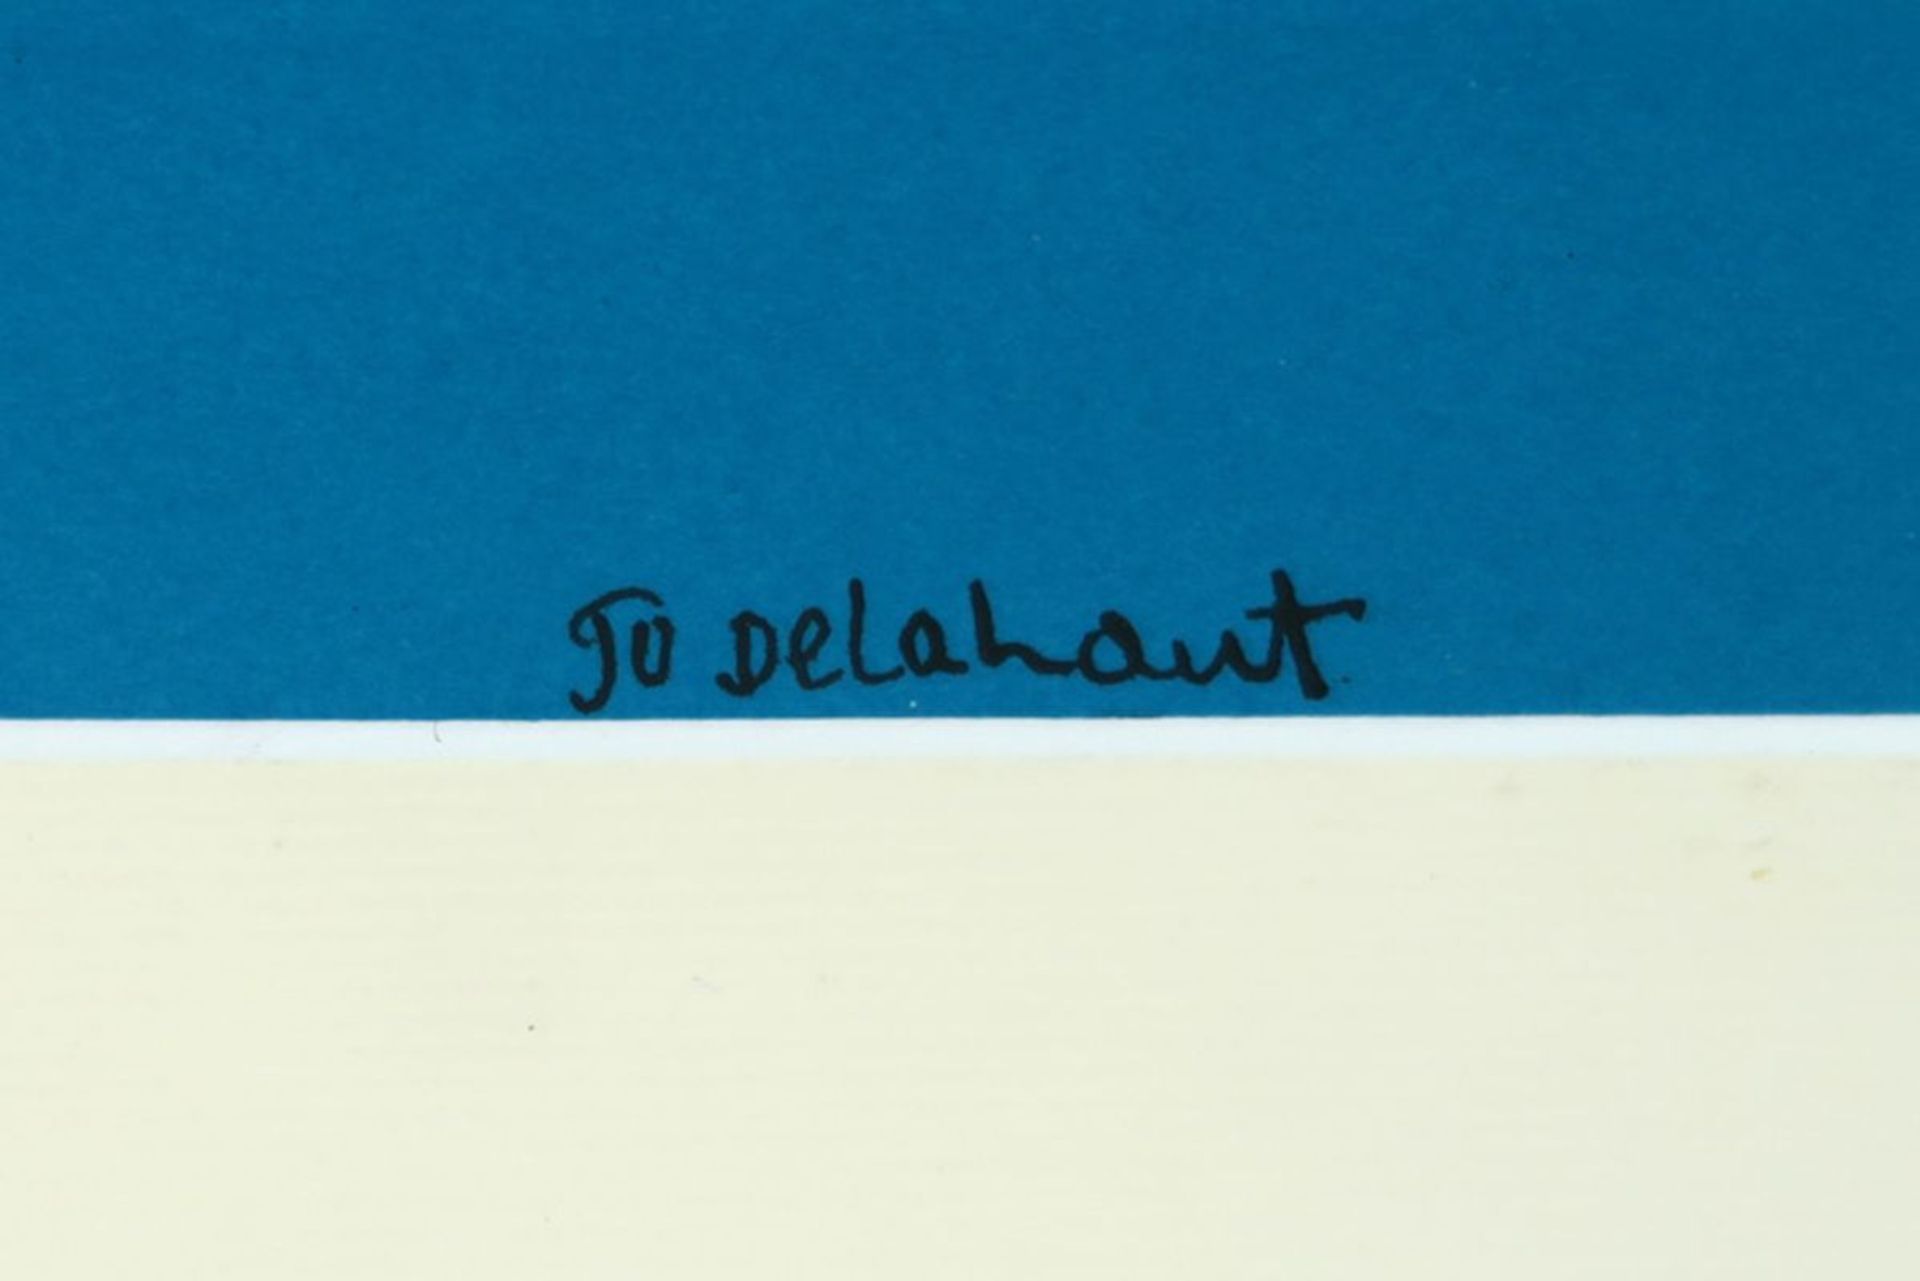 DELAHAUT JO (1911 - 1992) schilderij in gemengde techniek met collage en acryl op [...] - Bild 3 aus 3